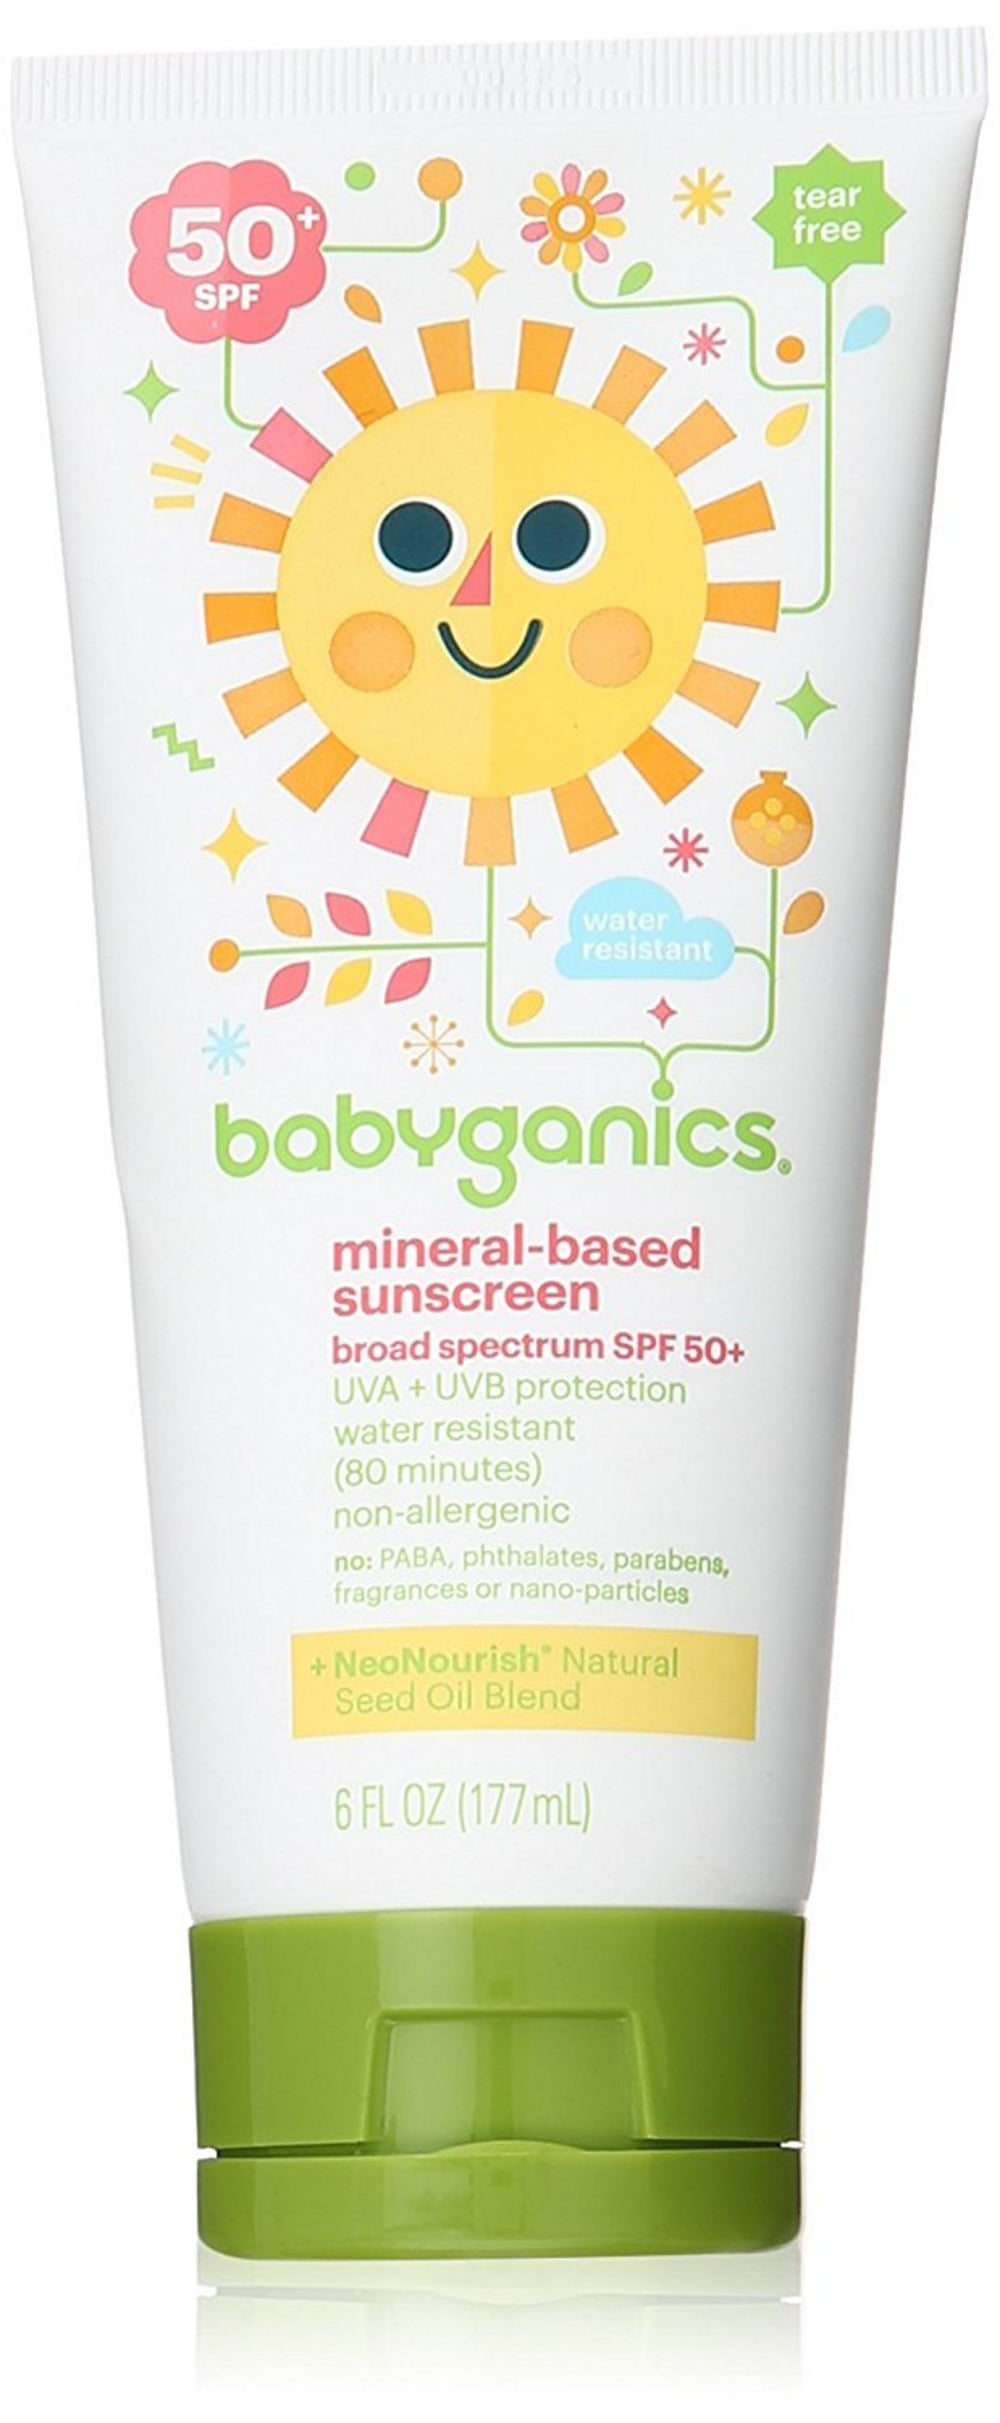 babyganics sunscreen lotion